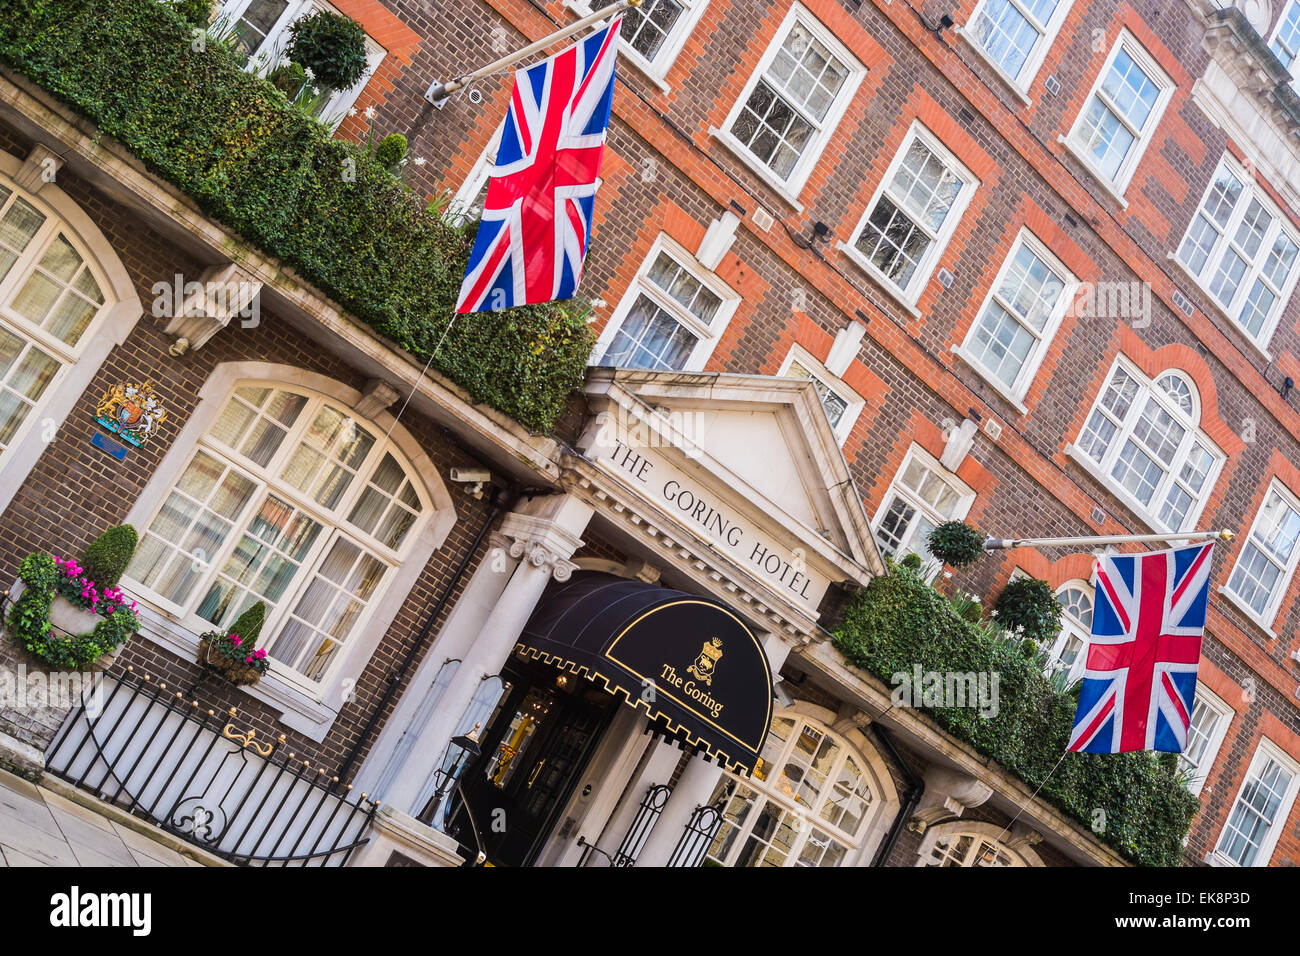 Goring Hotel Belgravia - London Stockfoto